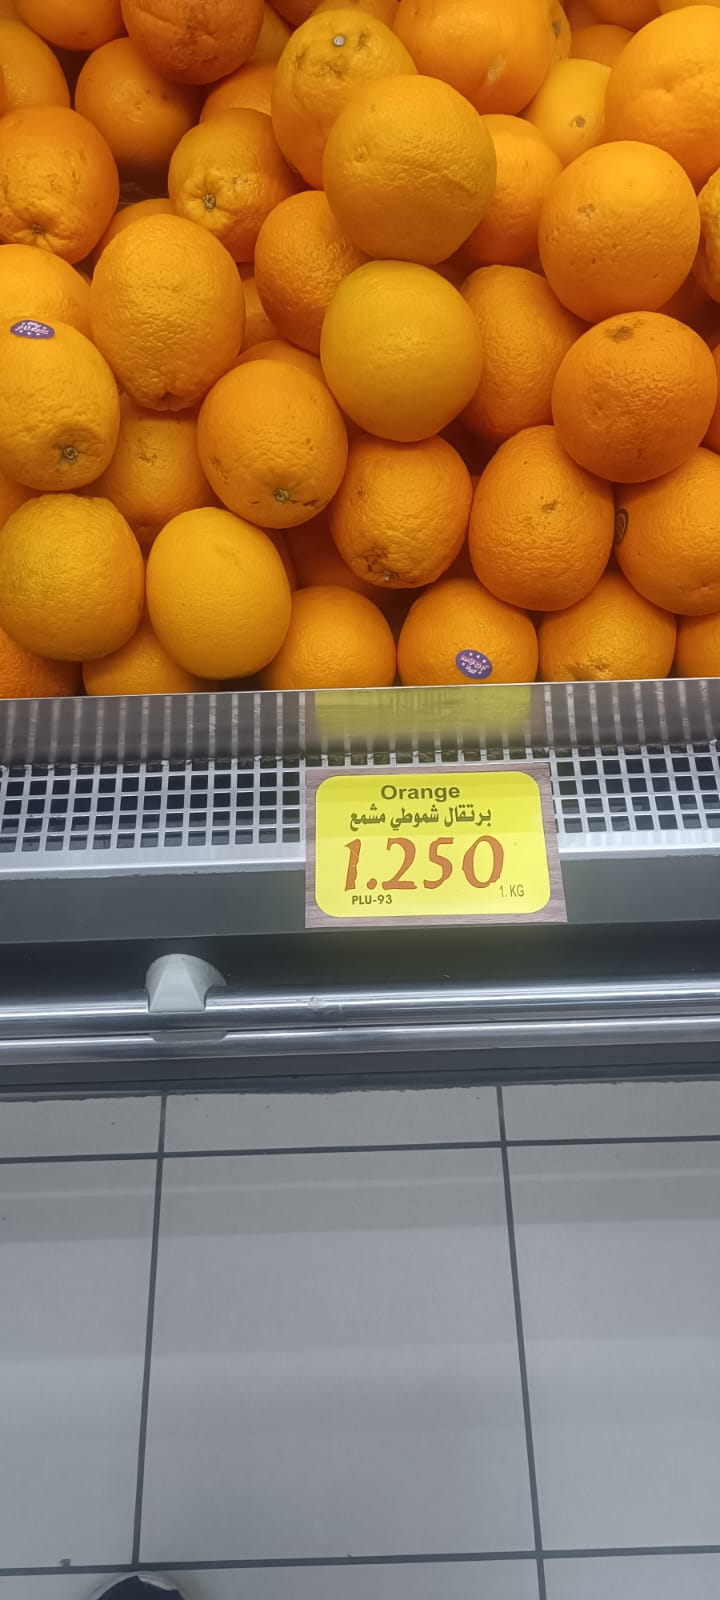 البرتقال المصري يباع بسعر 1.25 دينار أردني للكيلو